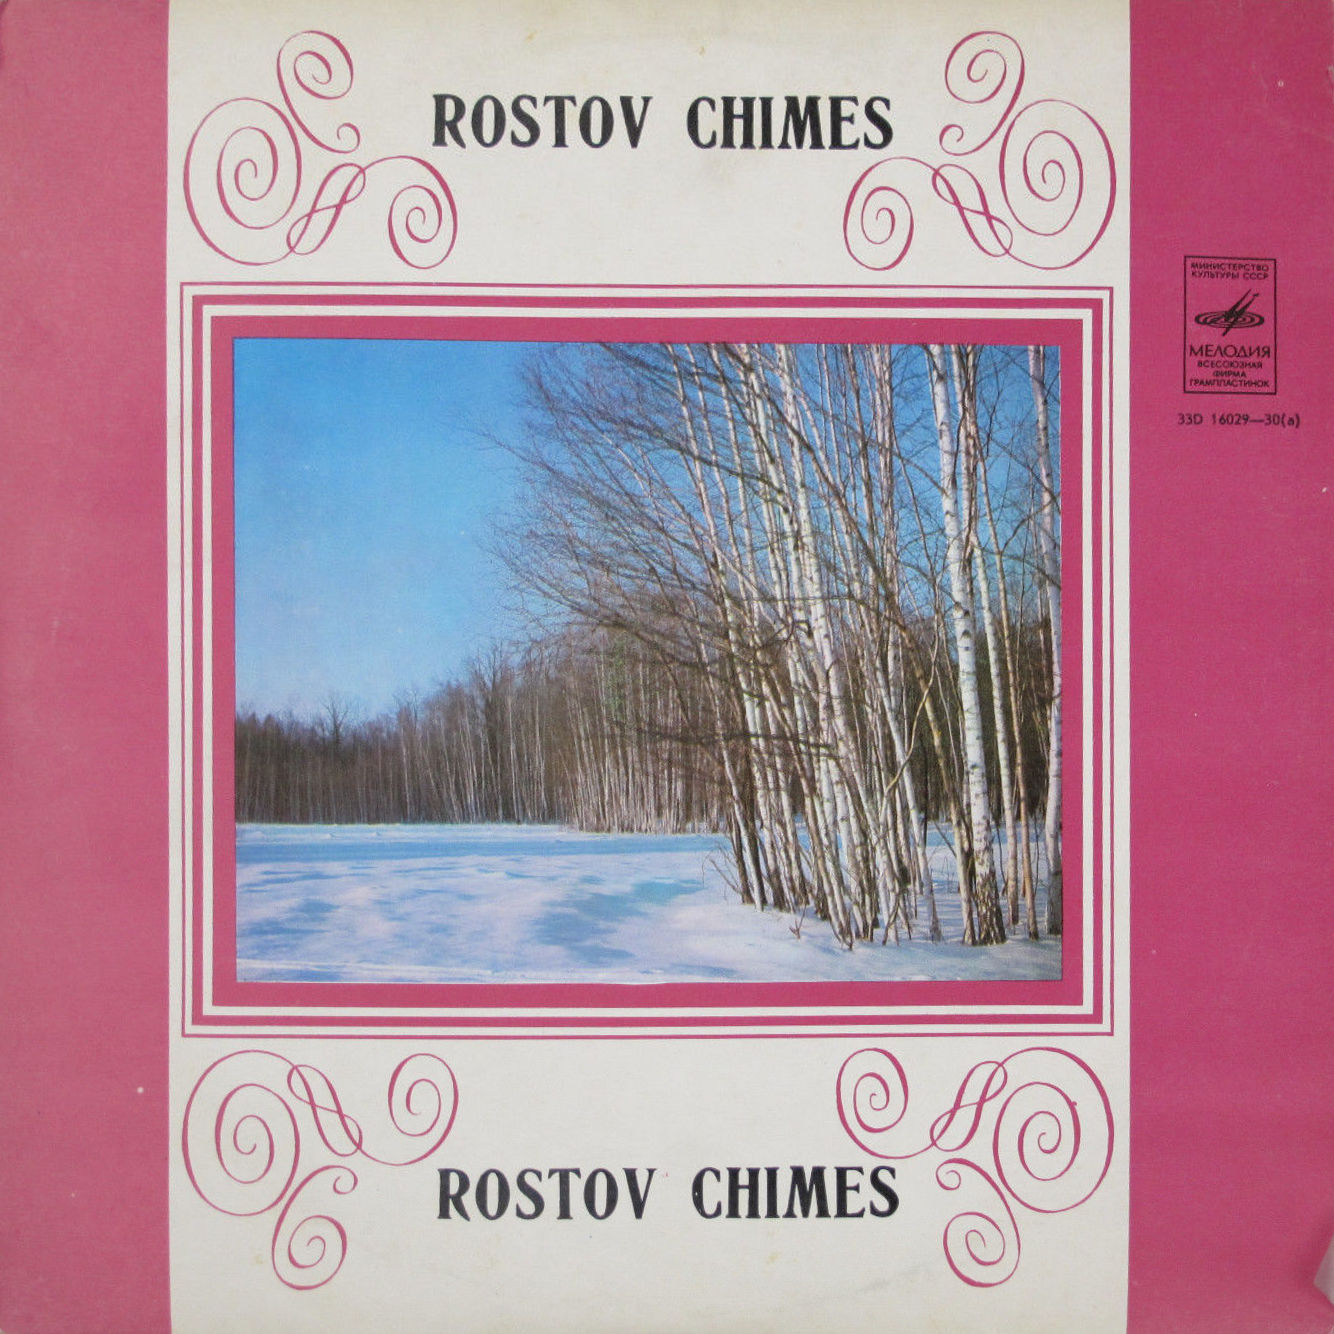 Ростовские звоны (Rostov Chimes)